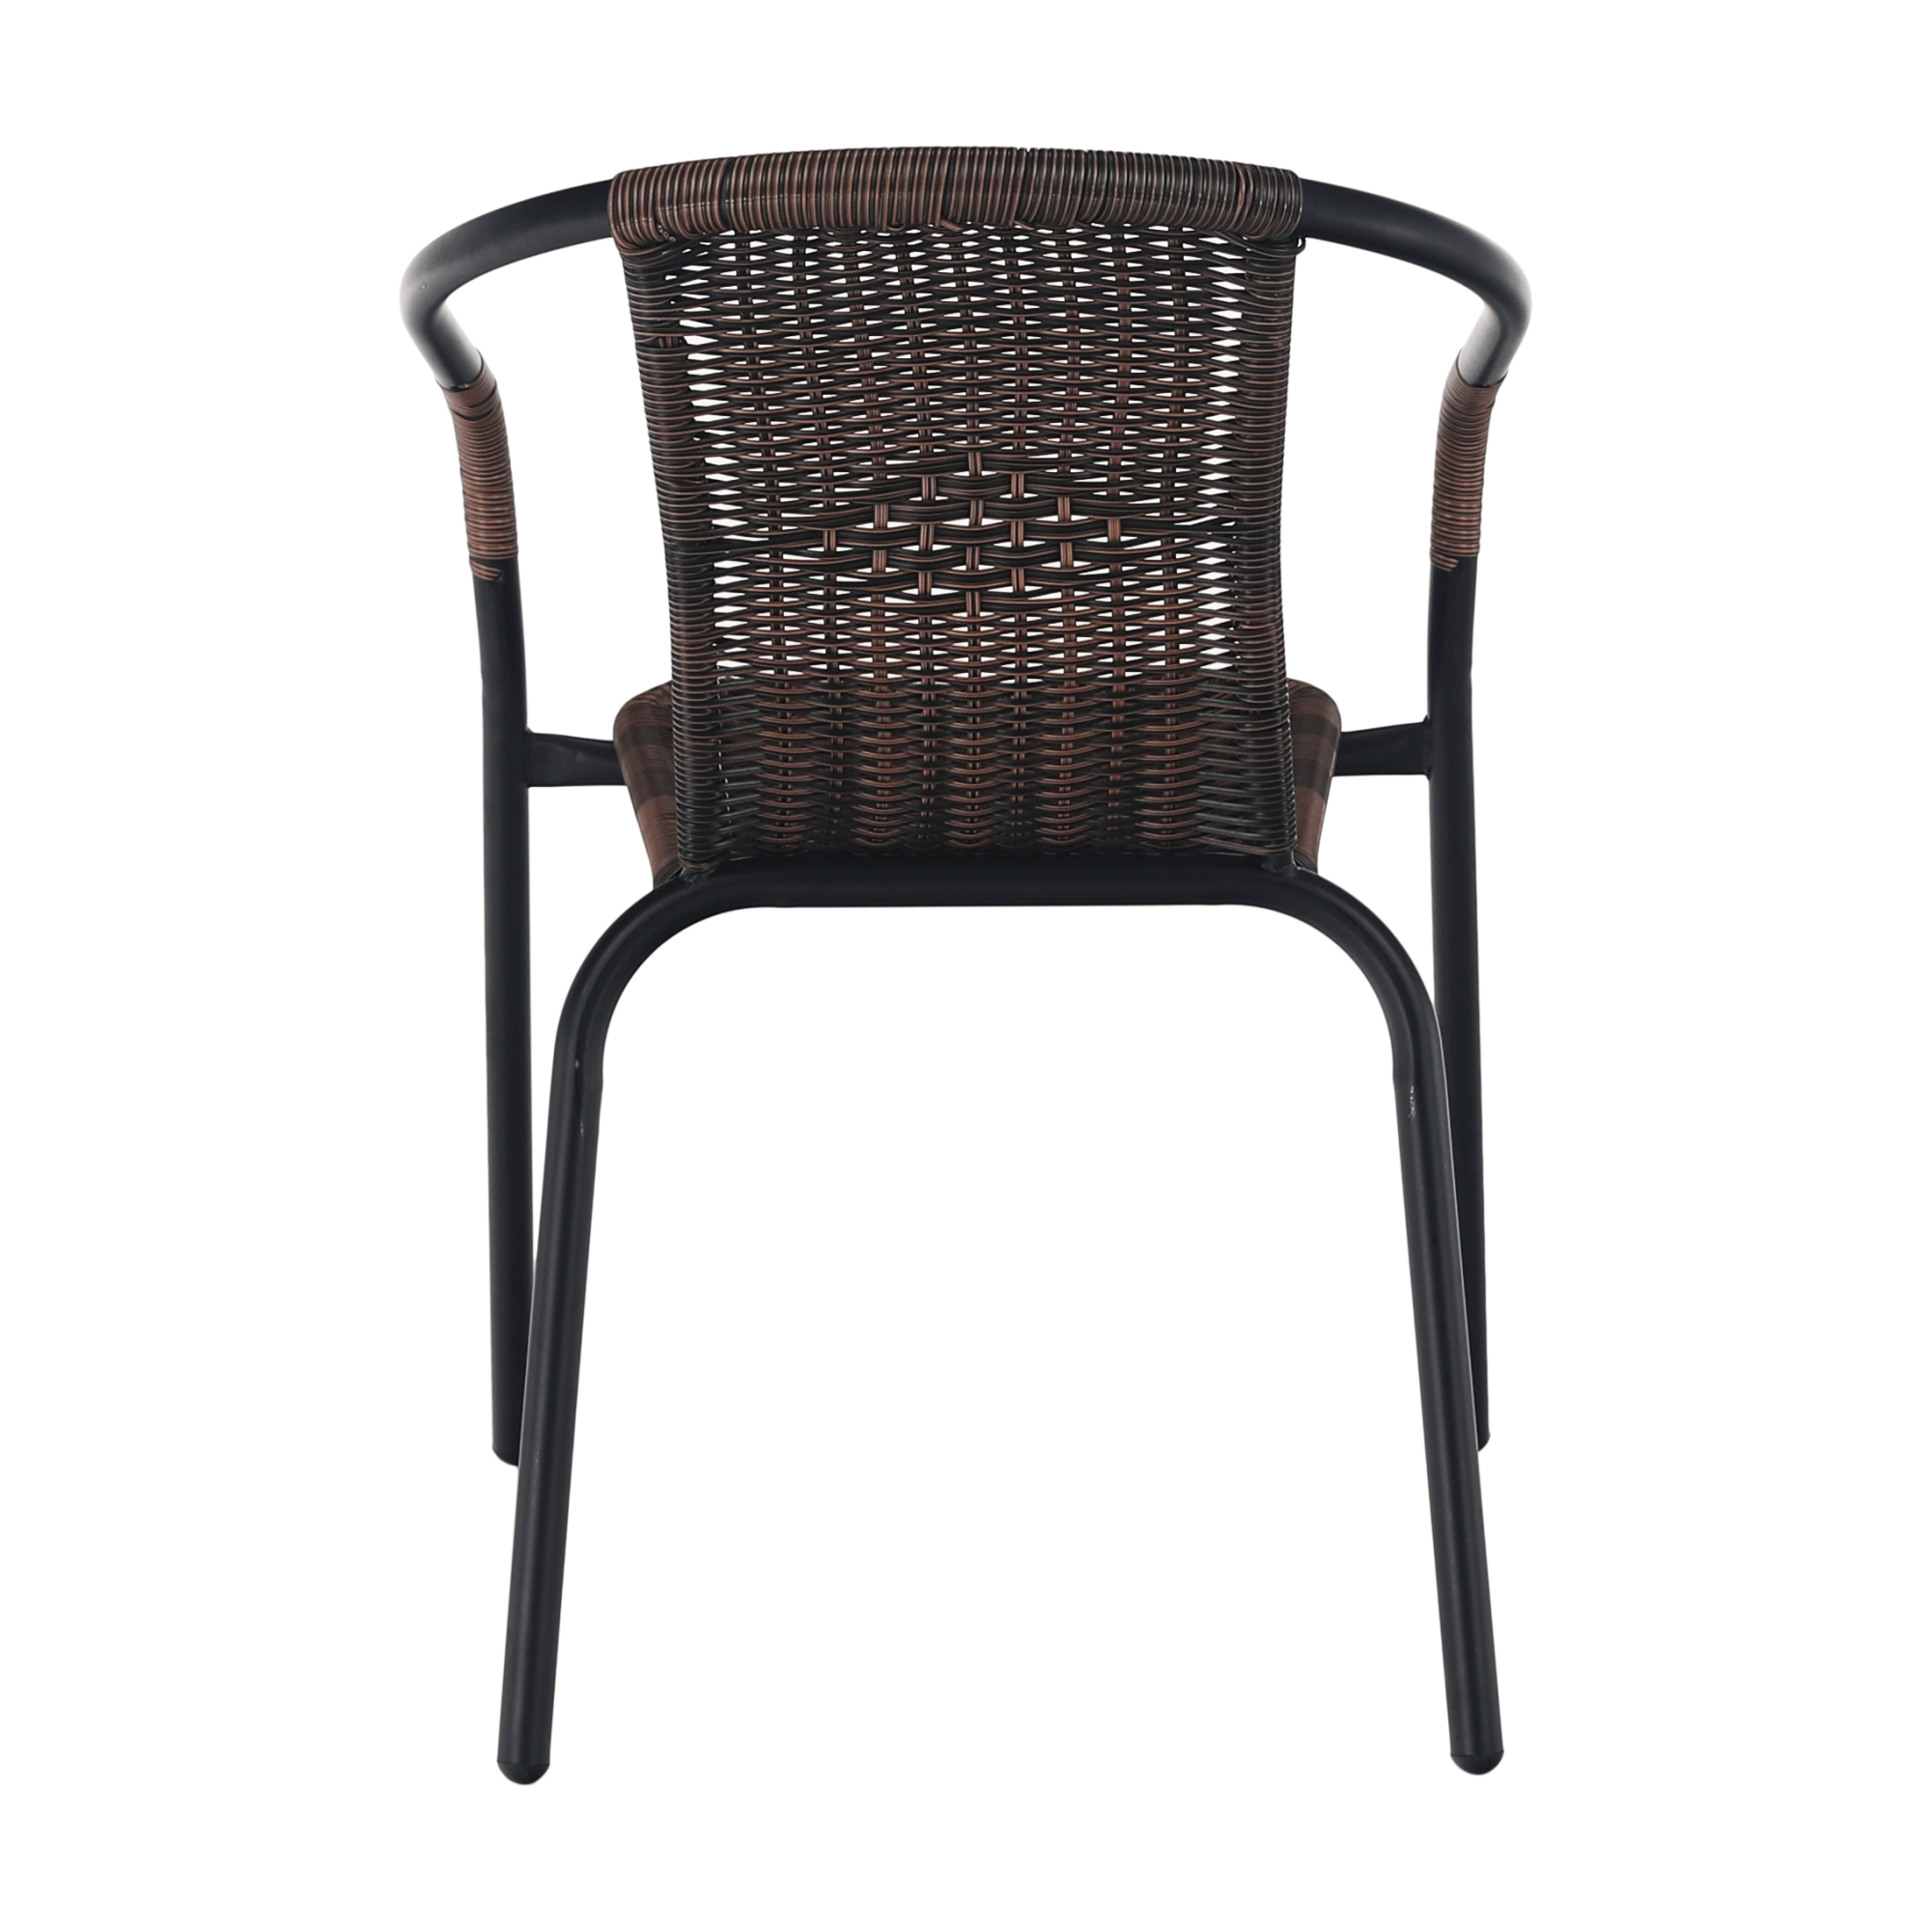 Davidson szék - Marco Mobili Bútoráruház - kerti szék